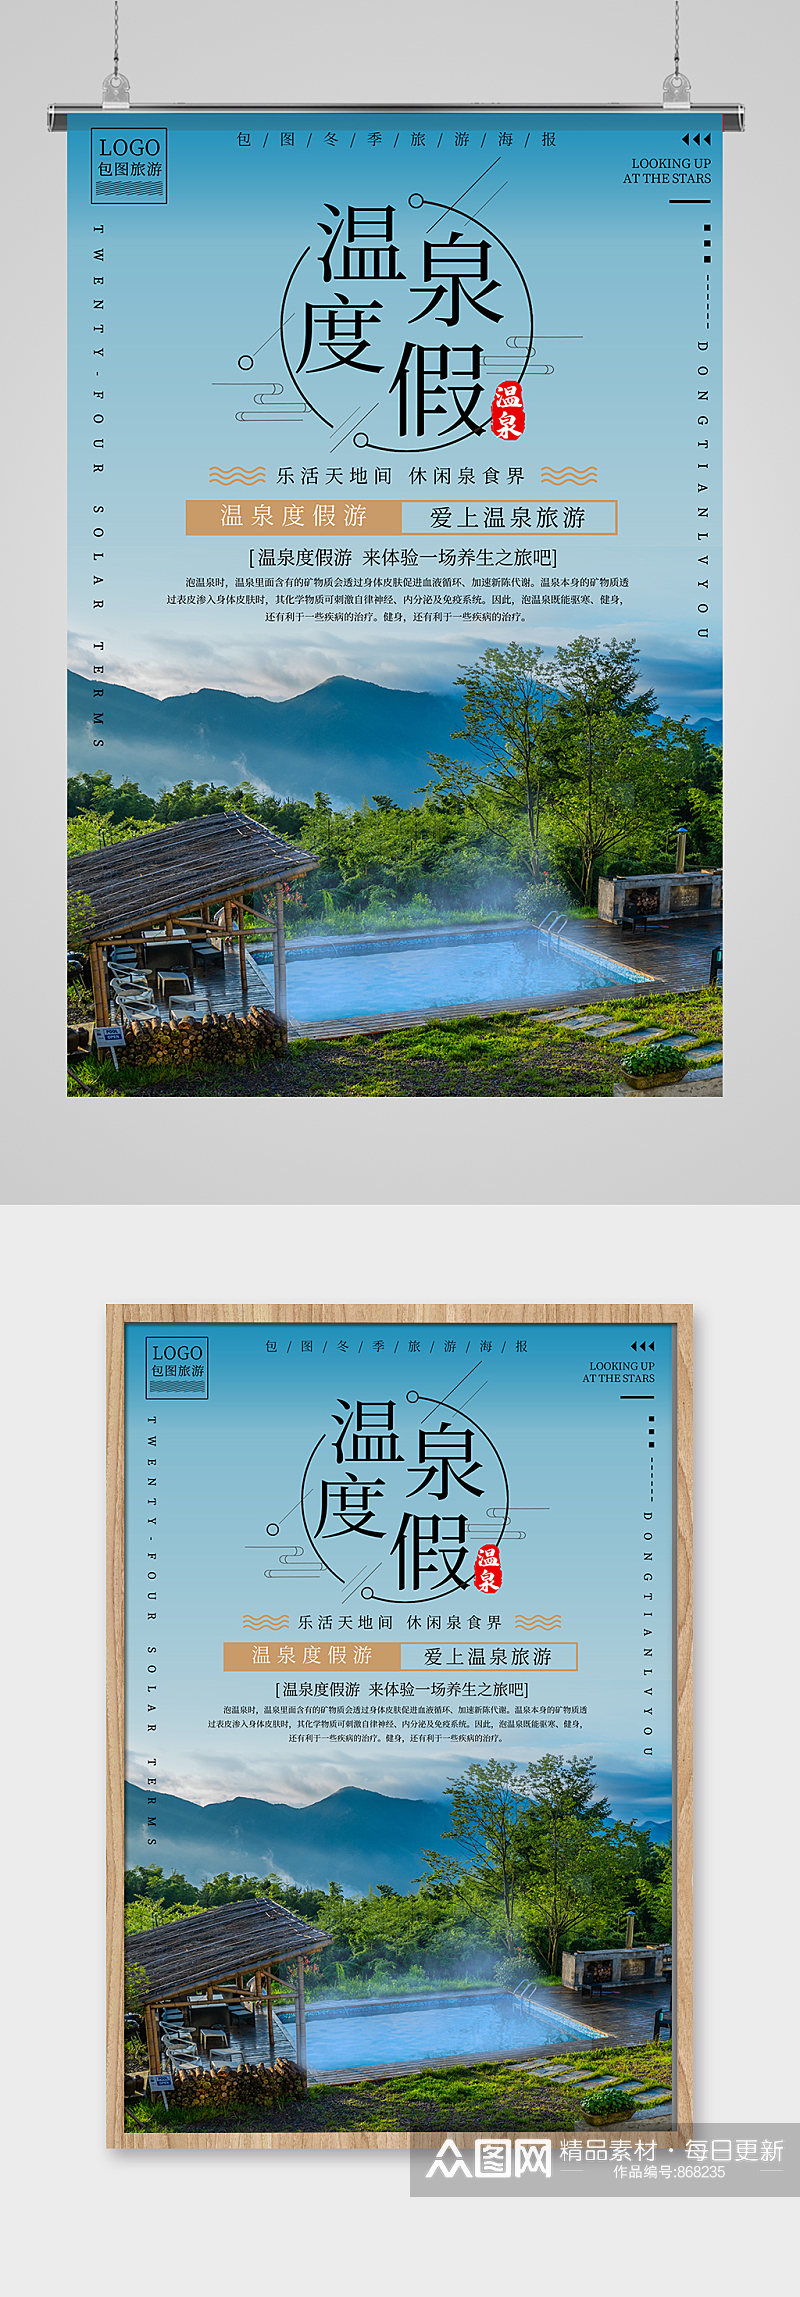 温泉度假休闲旅游海报设计素材